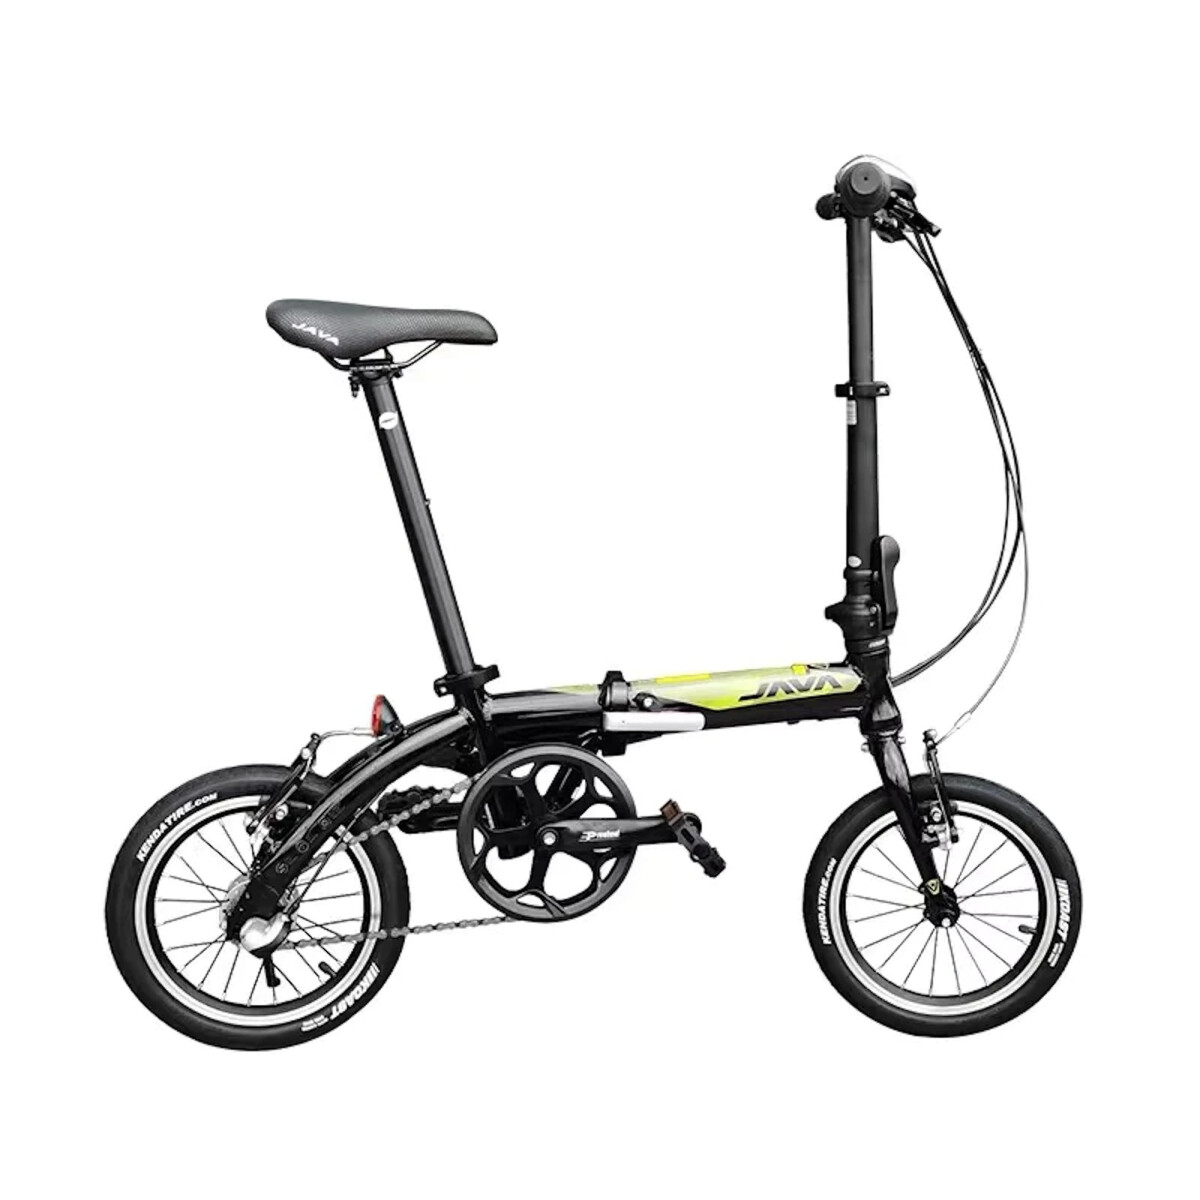 Java - Bicicleta de Ciudad - Plegable X3-1. Rodado 16", 7 Velocidades. Color: Negro. - 001 